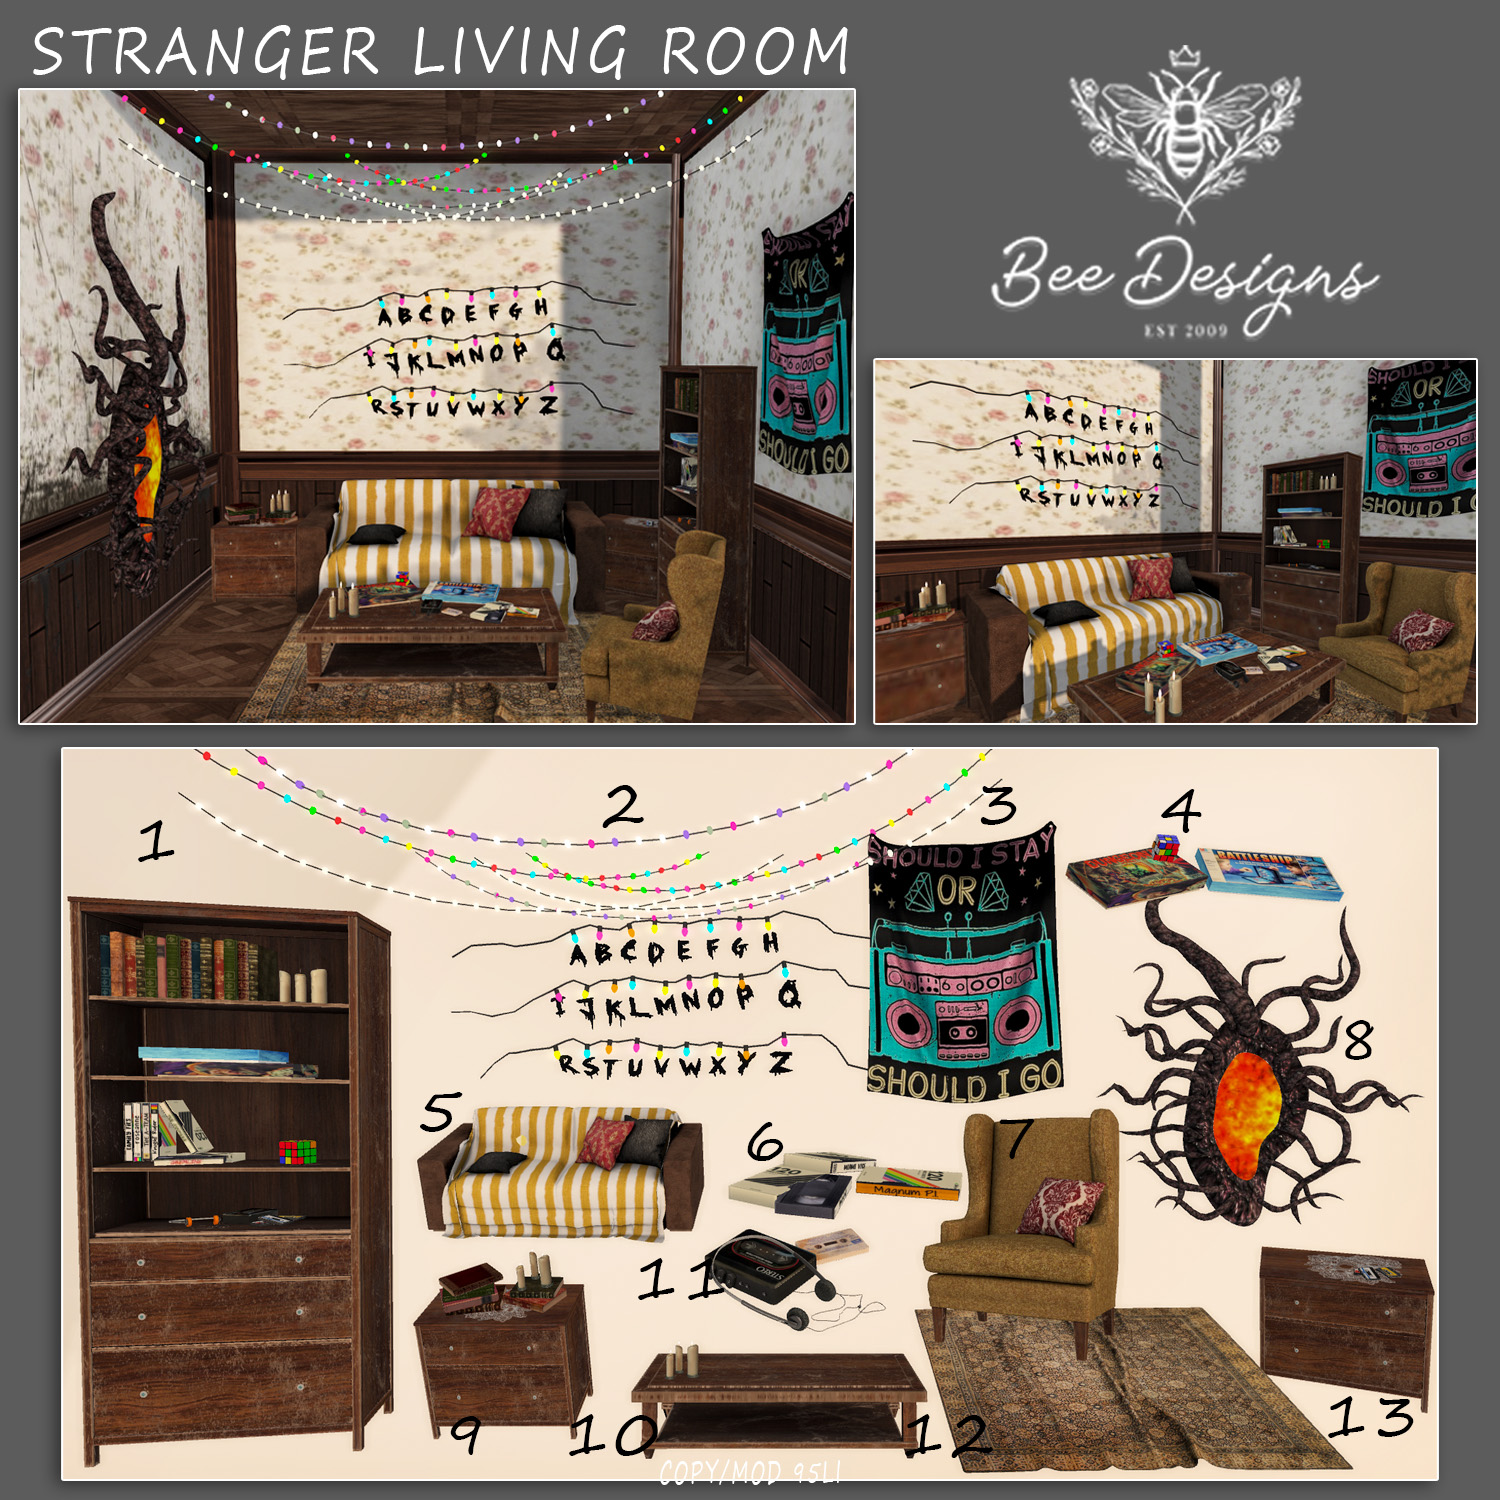 Bee Designs – Stranger Living Room